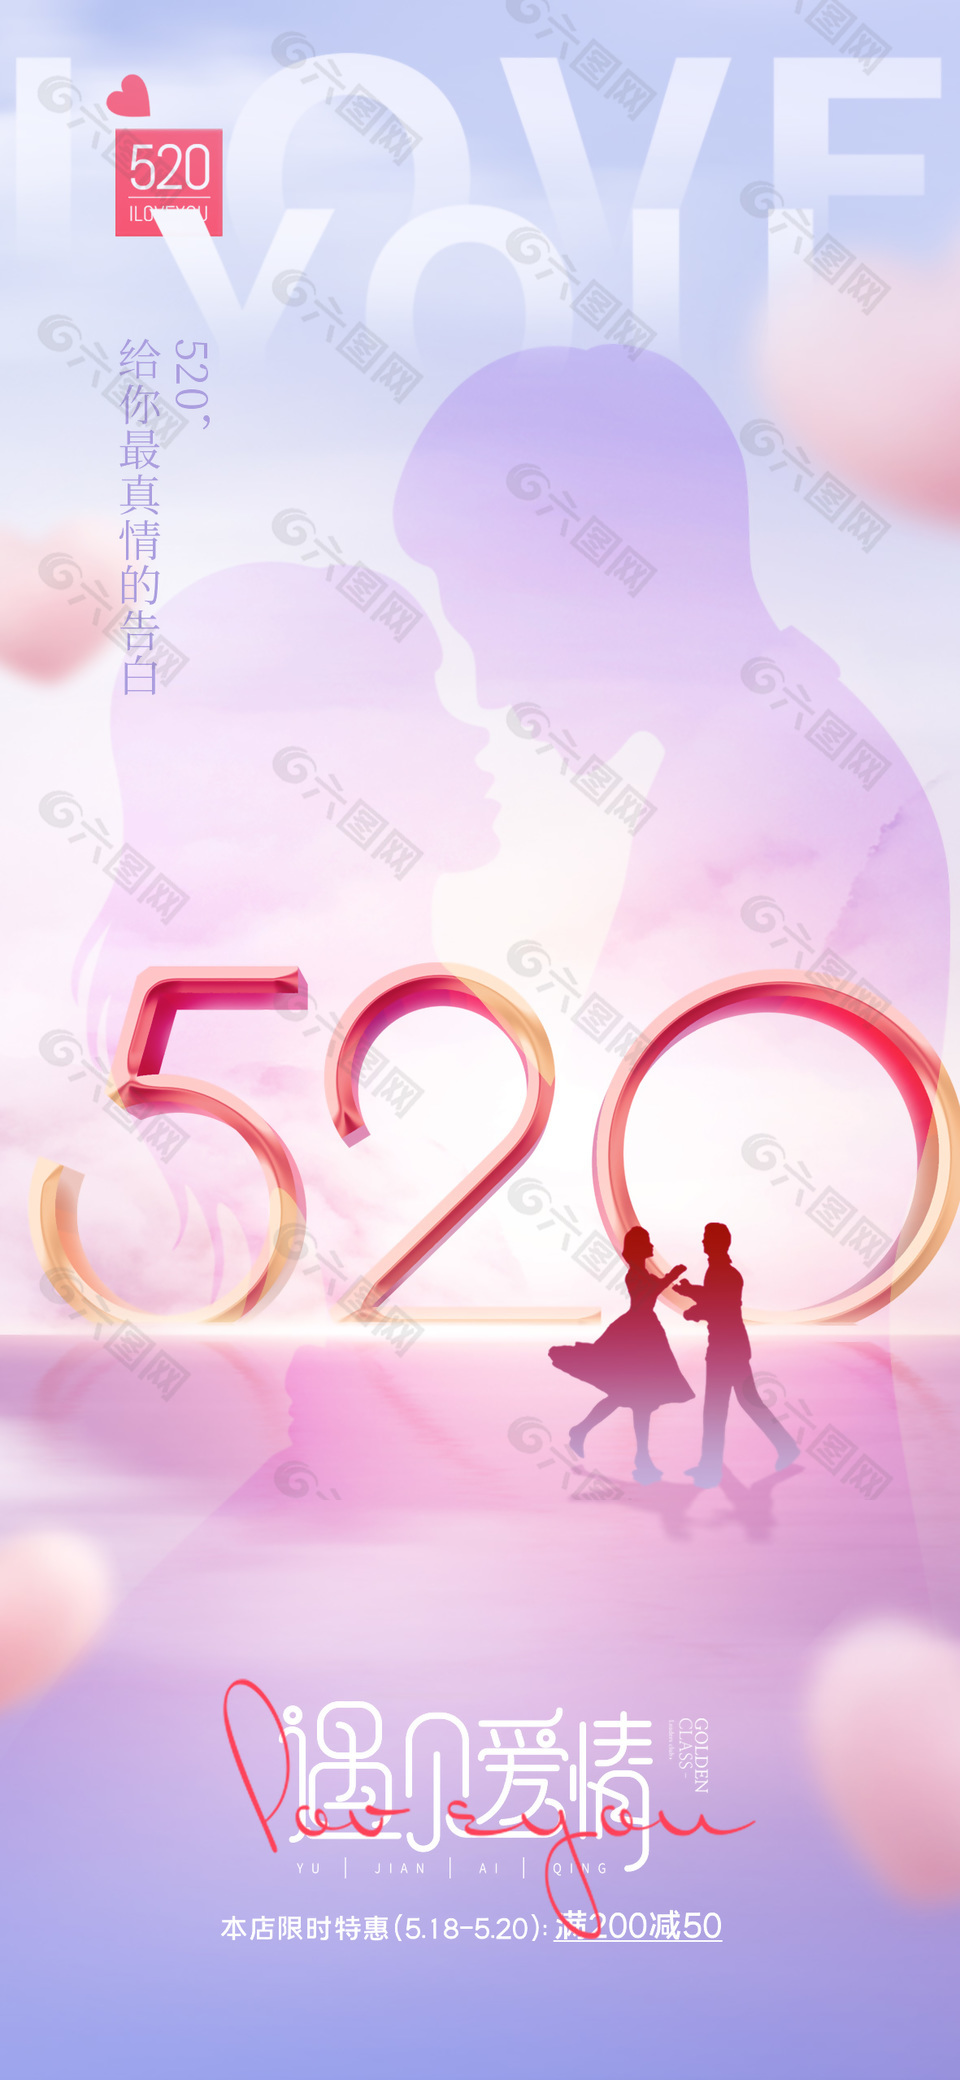 520遇见爱情限时特惠粉色剪影海报